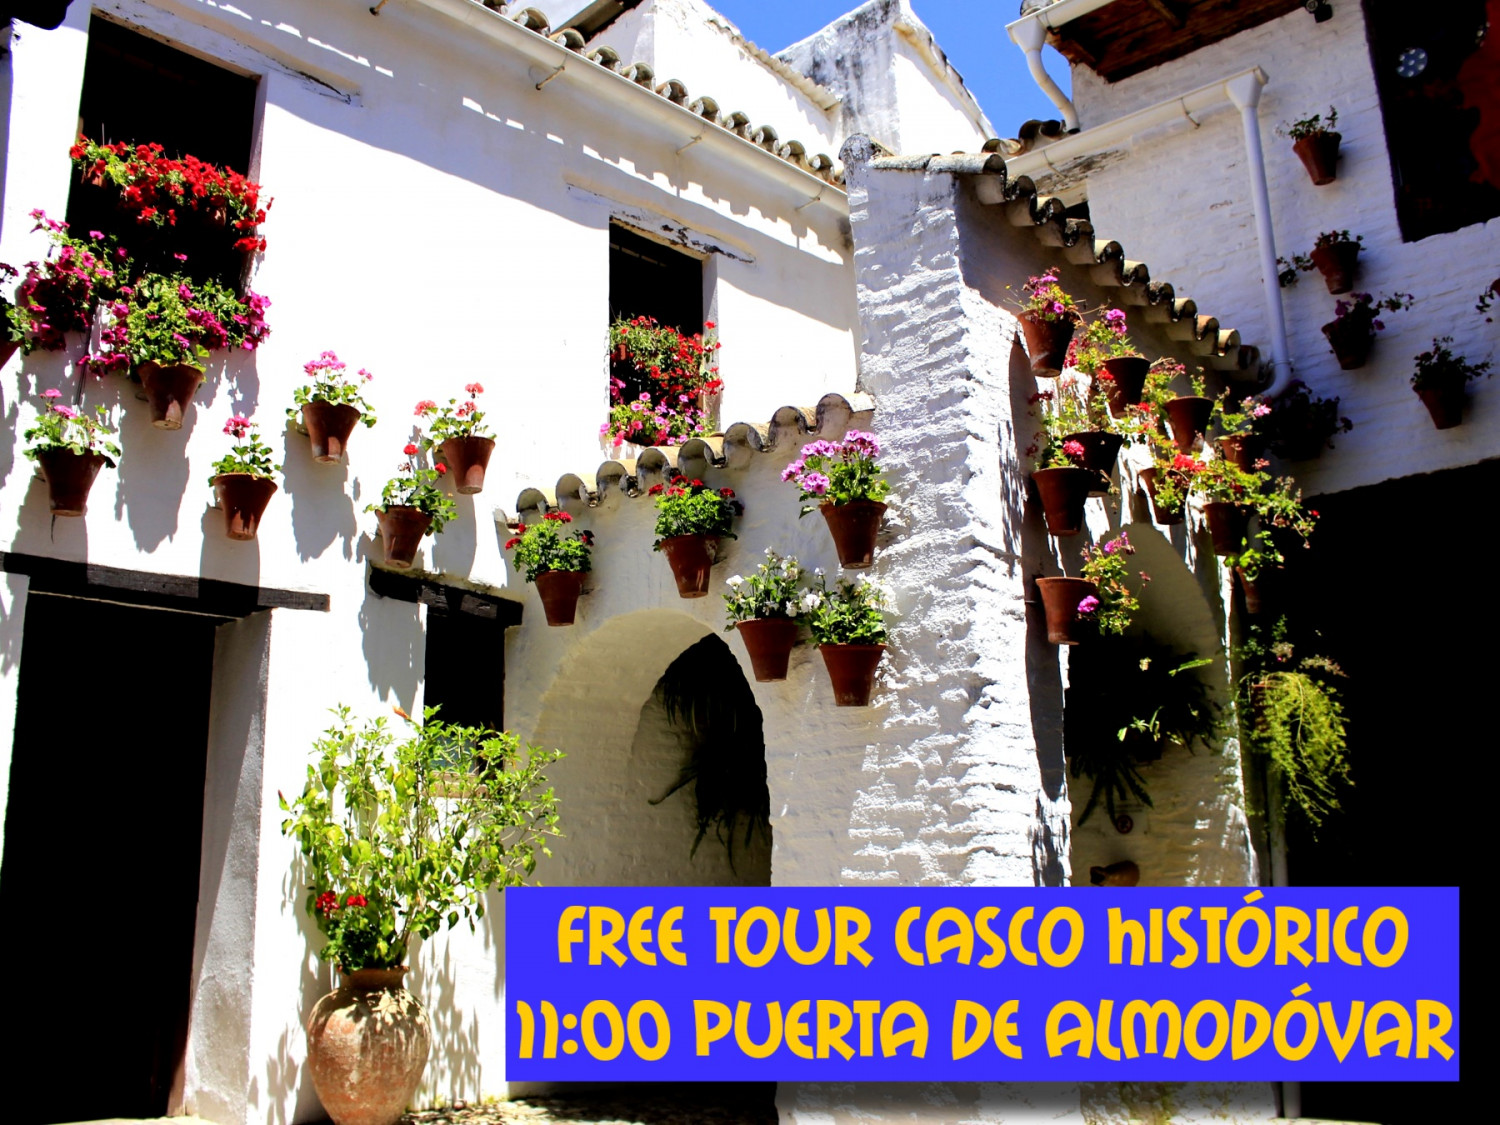 Free Tour Casco Historico Cordoba